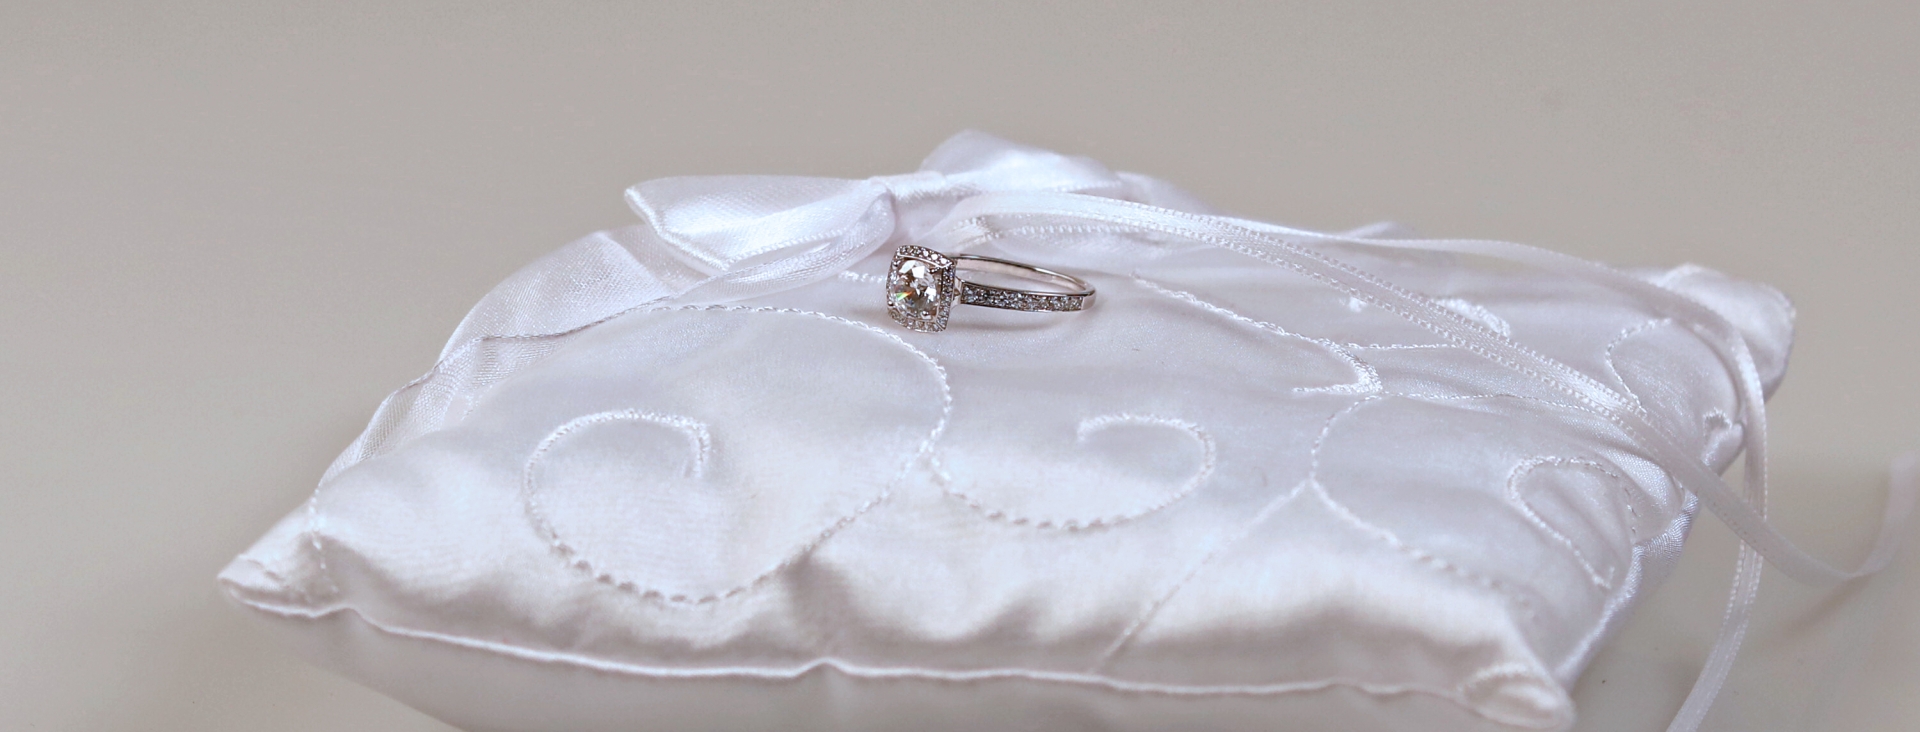 Verlobungsringe, Engagement rings, Bagues de fiançailles, diamanten, diamonds, diamantringe